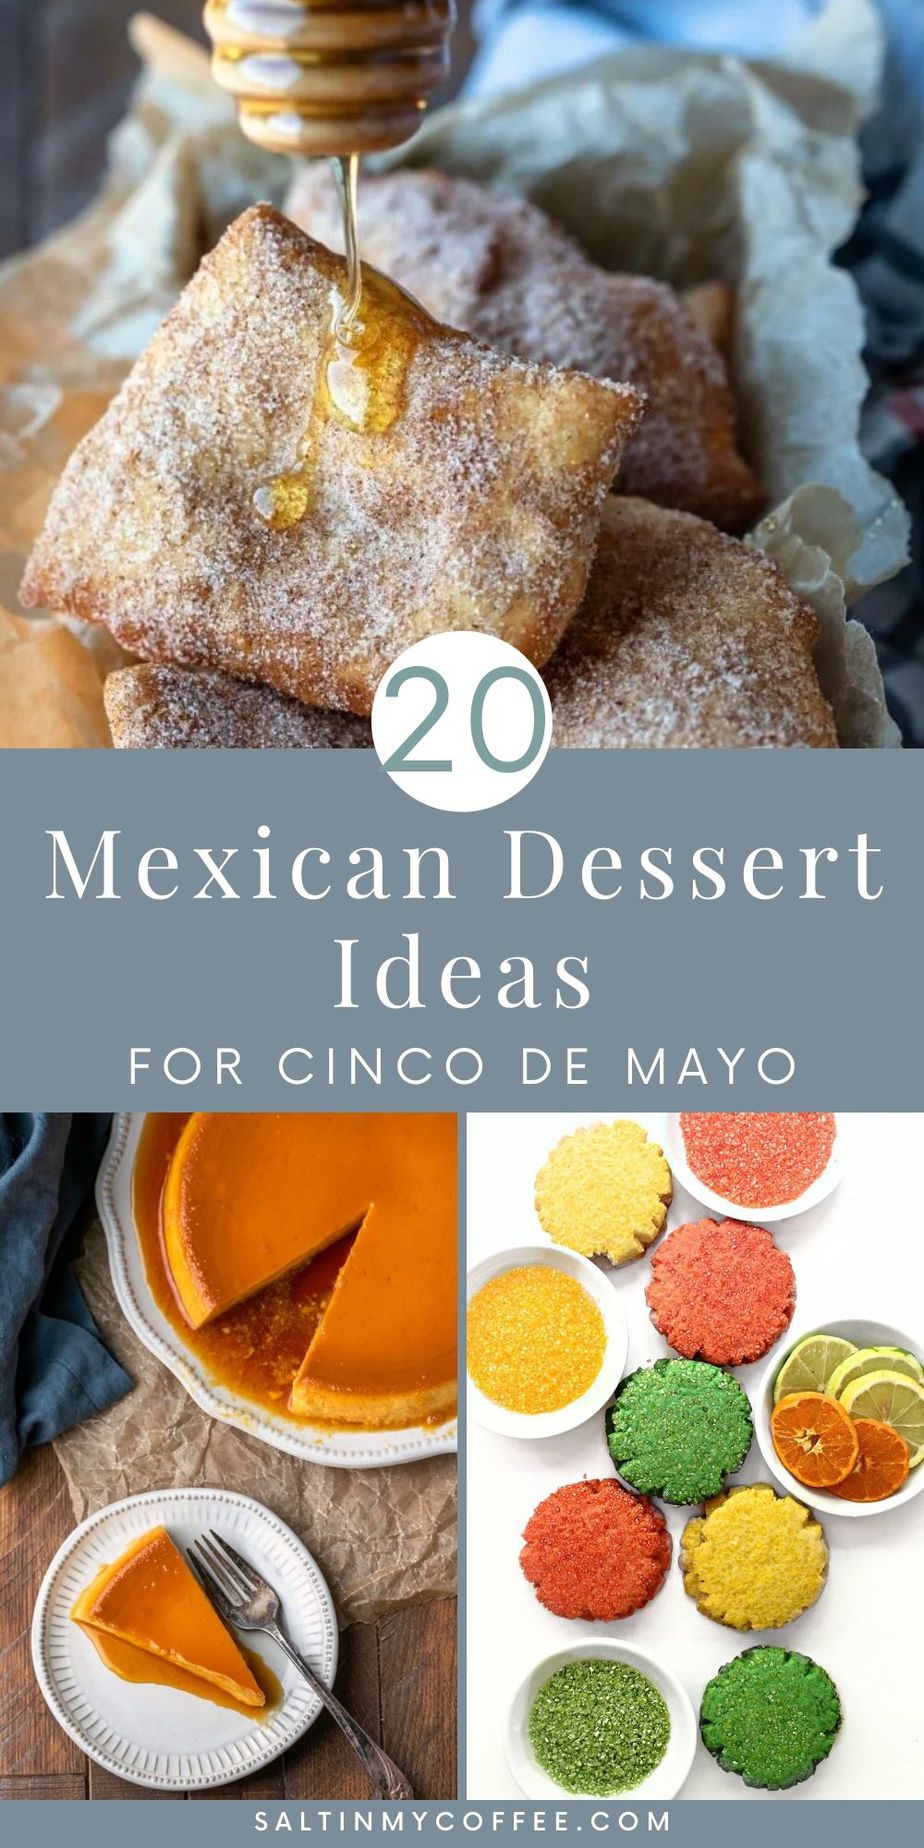 Mexican Dessert Ideas